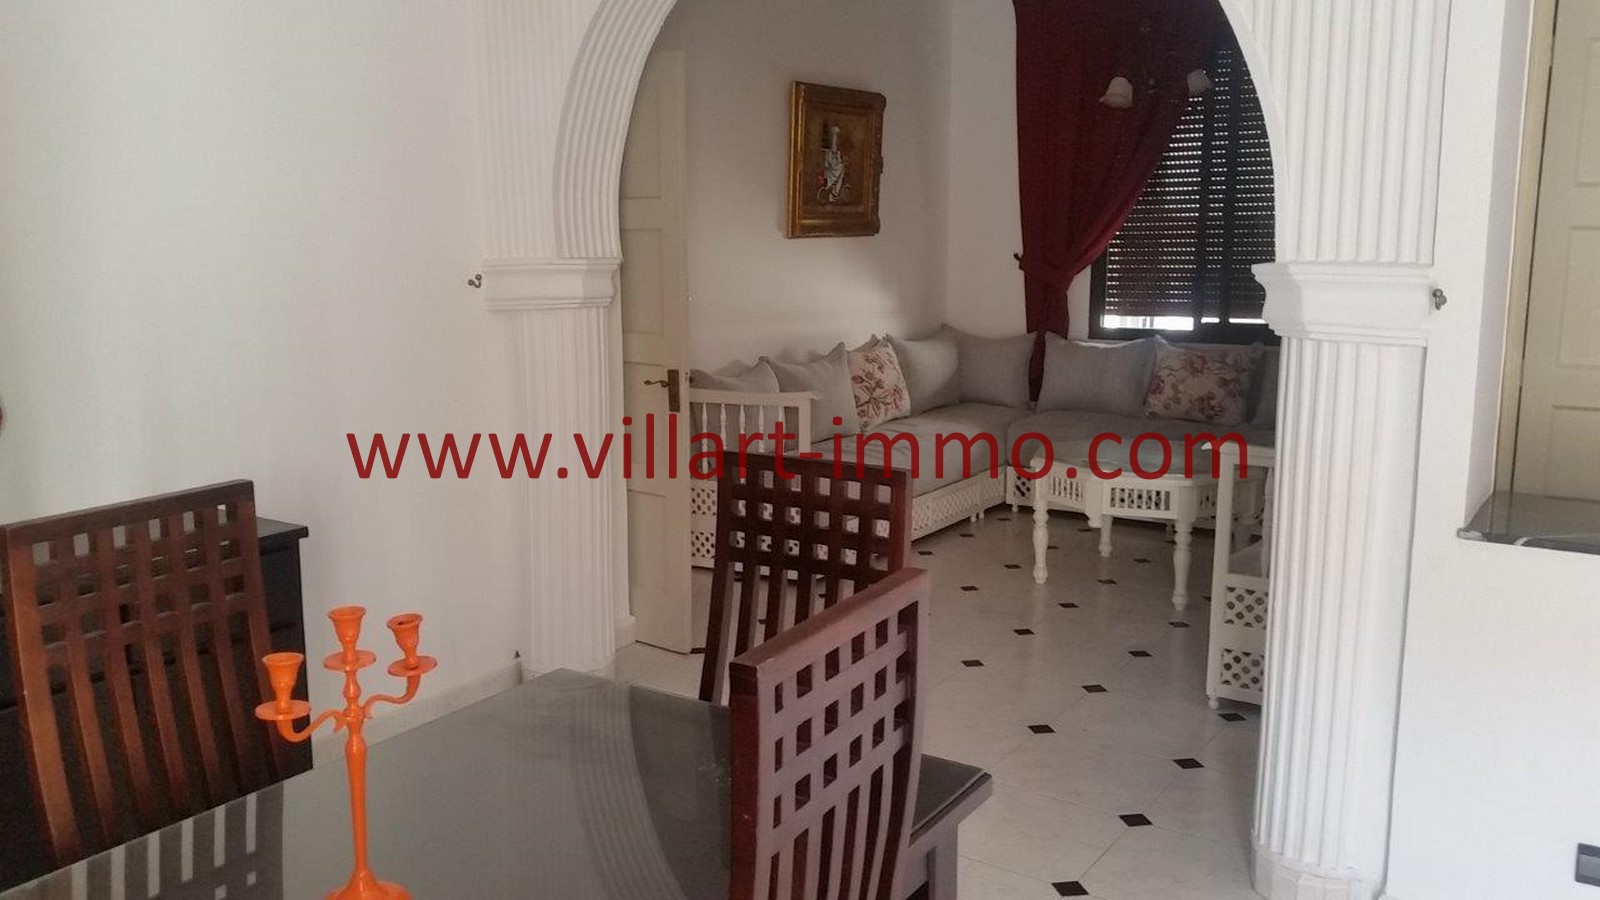 4-location-Appartement-Meublé-Tanger-Centre ville-Salon 3-L1014-Villart Immo-Maroc